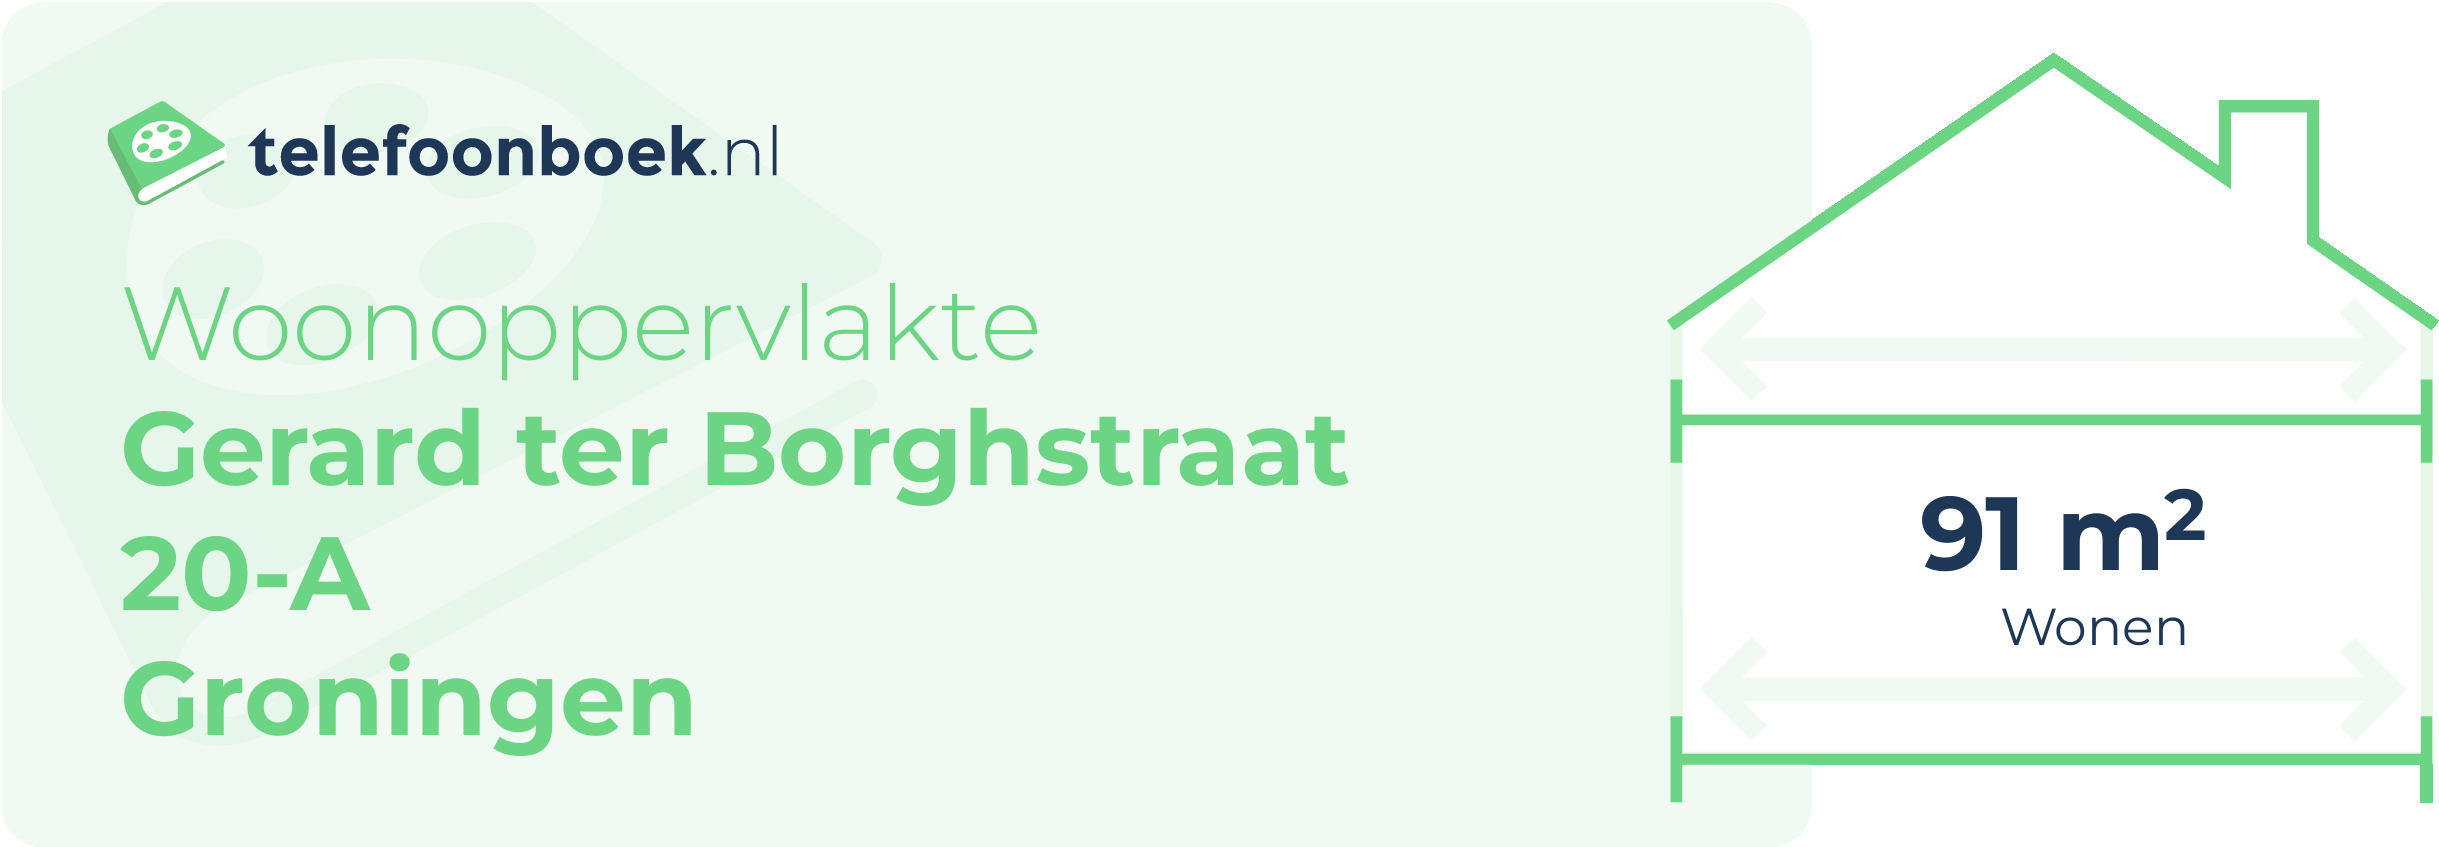 Woonoppervlakte Gerard Ter Borghstraat 20-A Groningen